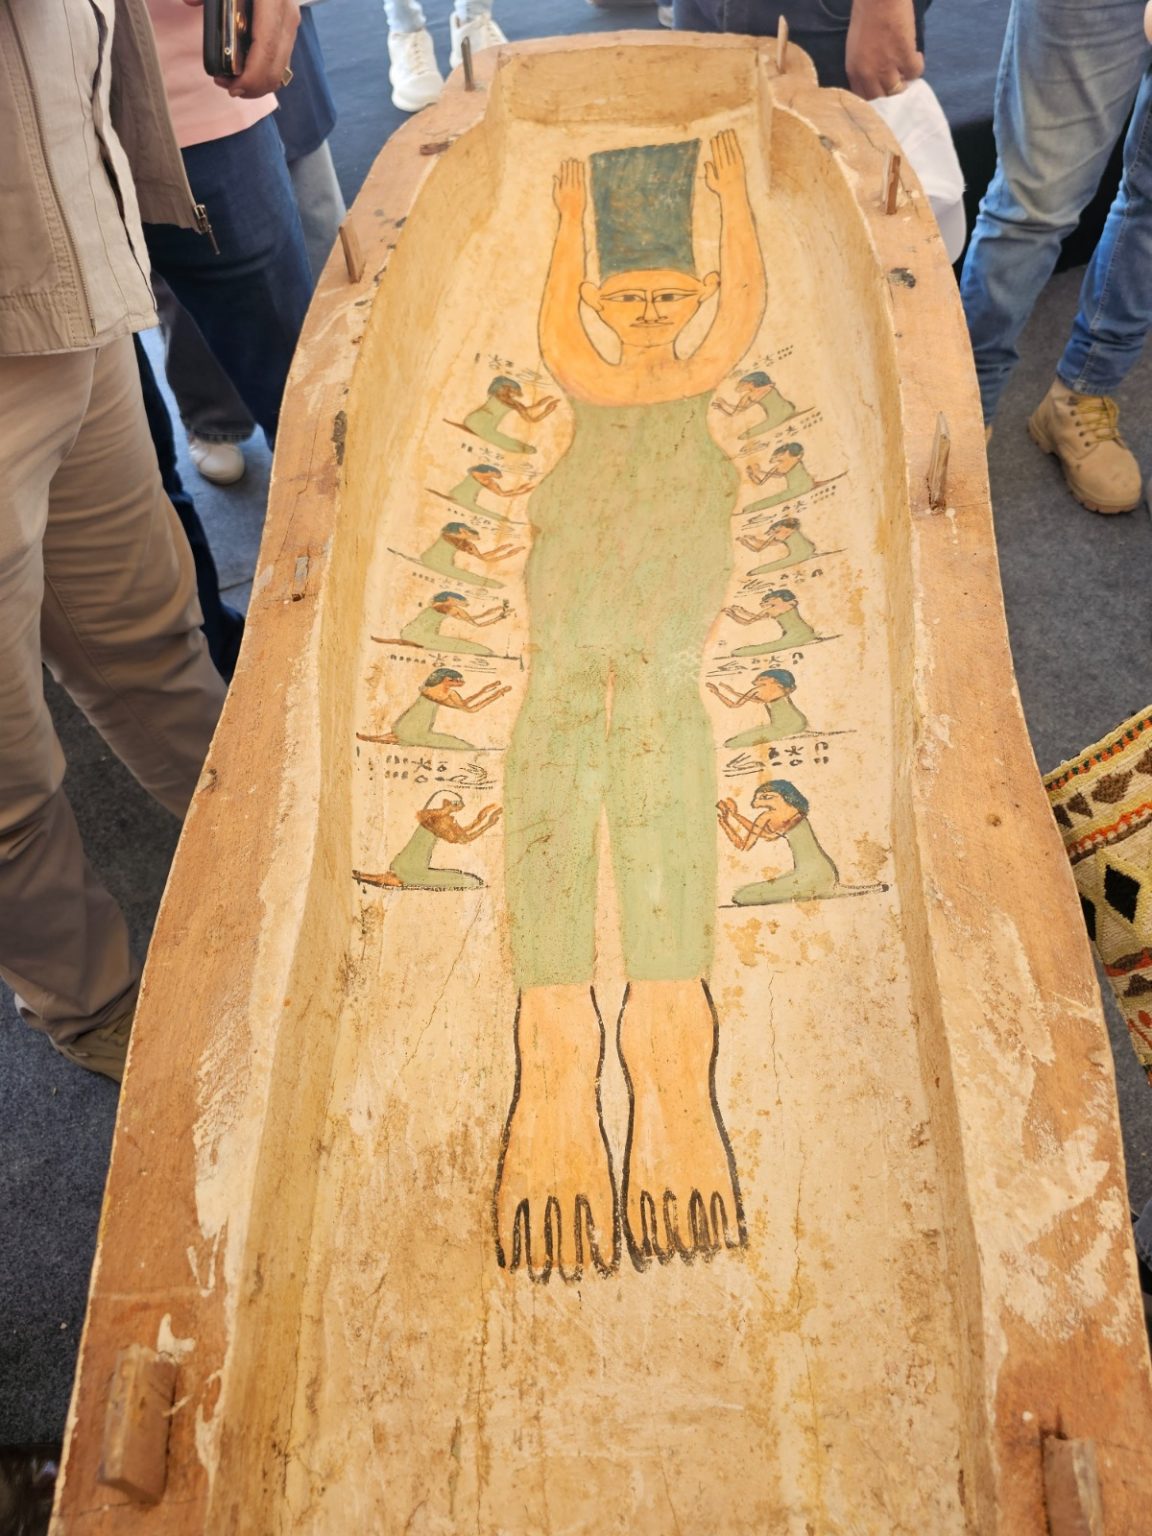 VIRAL: internautas ficam intrigados com semelhança entre múmia egípcia de 3.500 anos e a personagem Marge Simpson